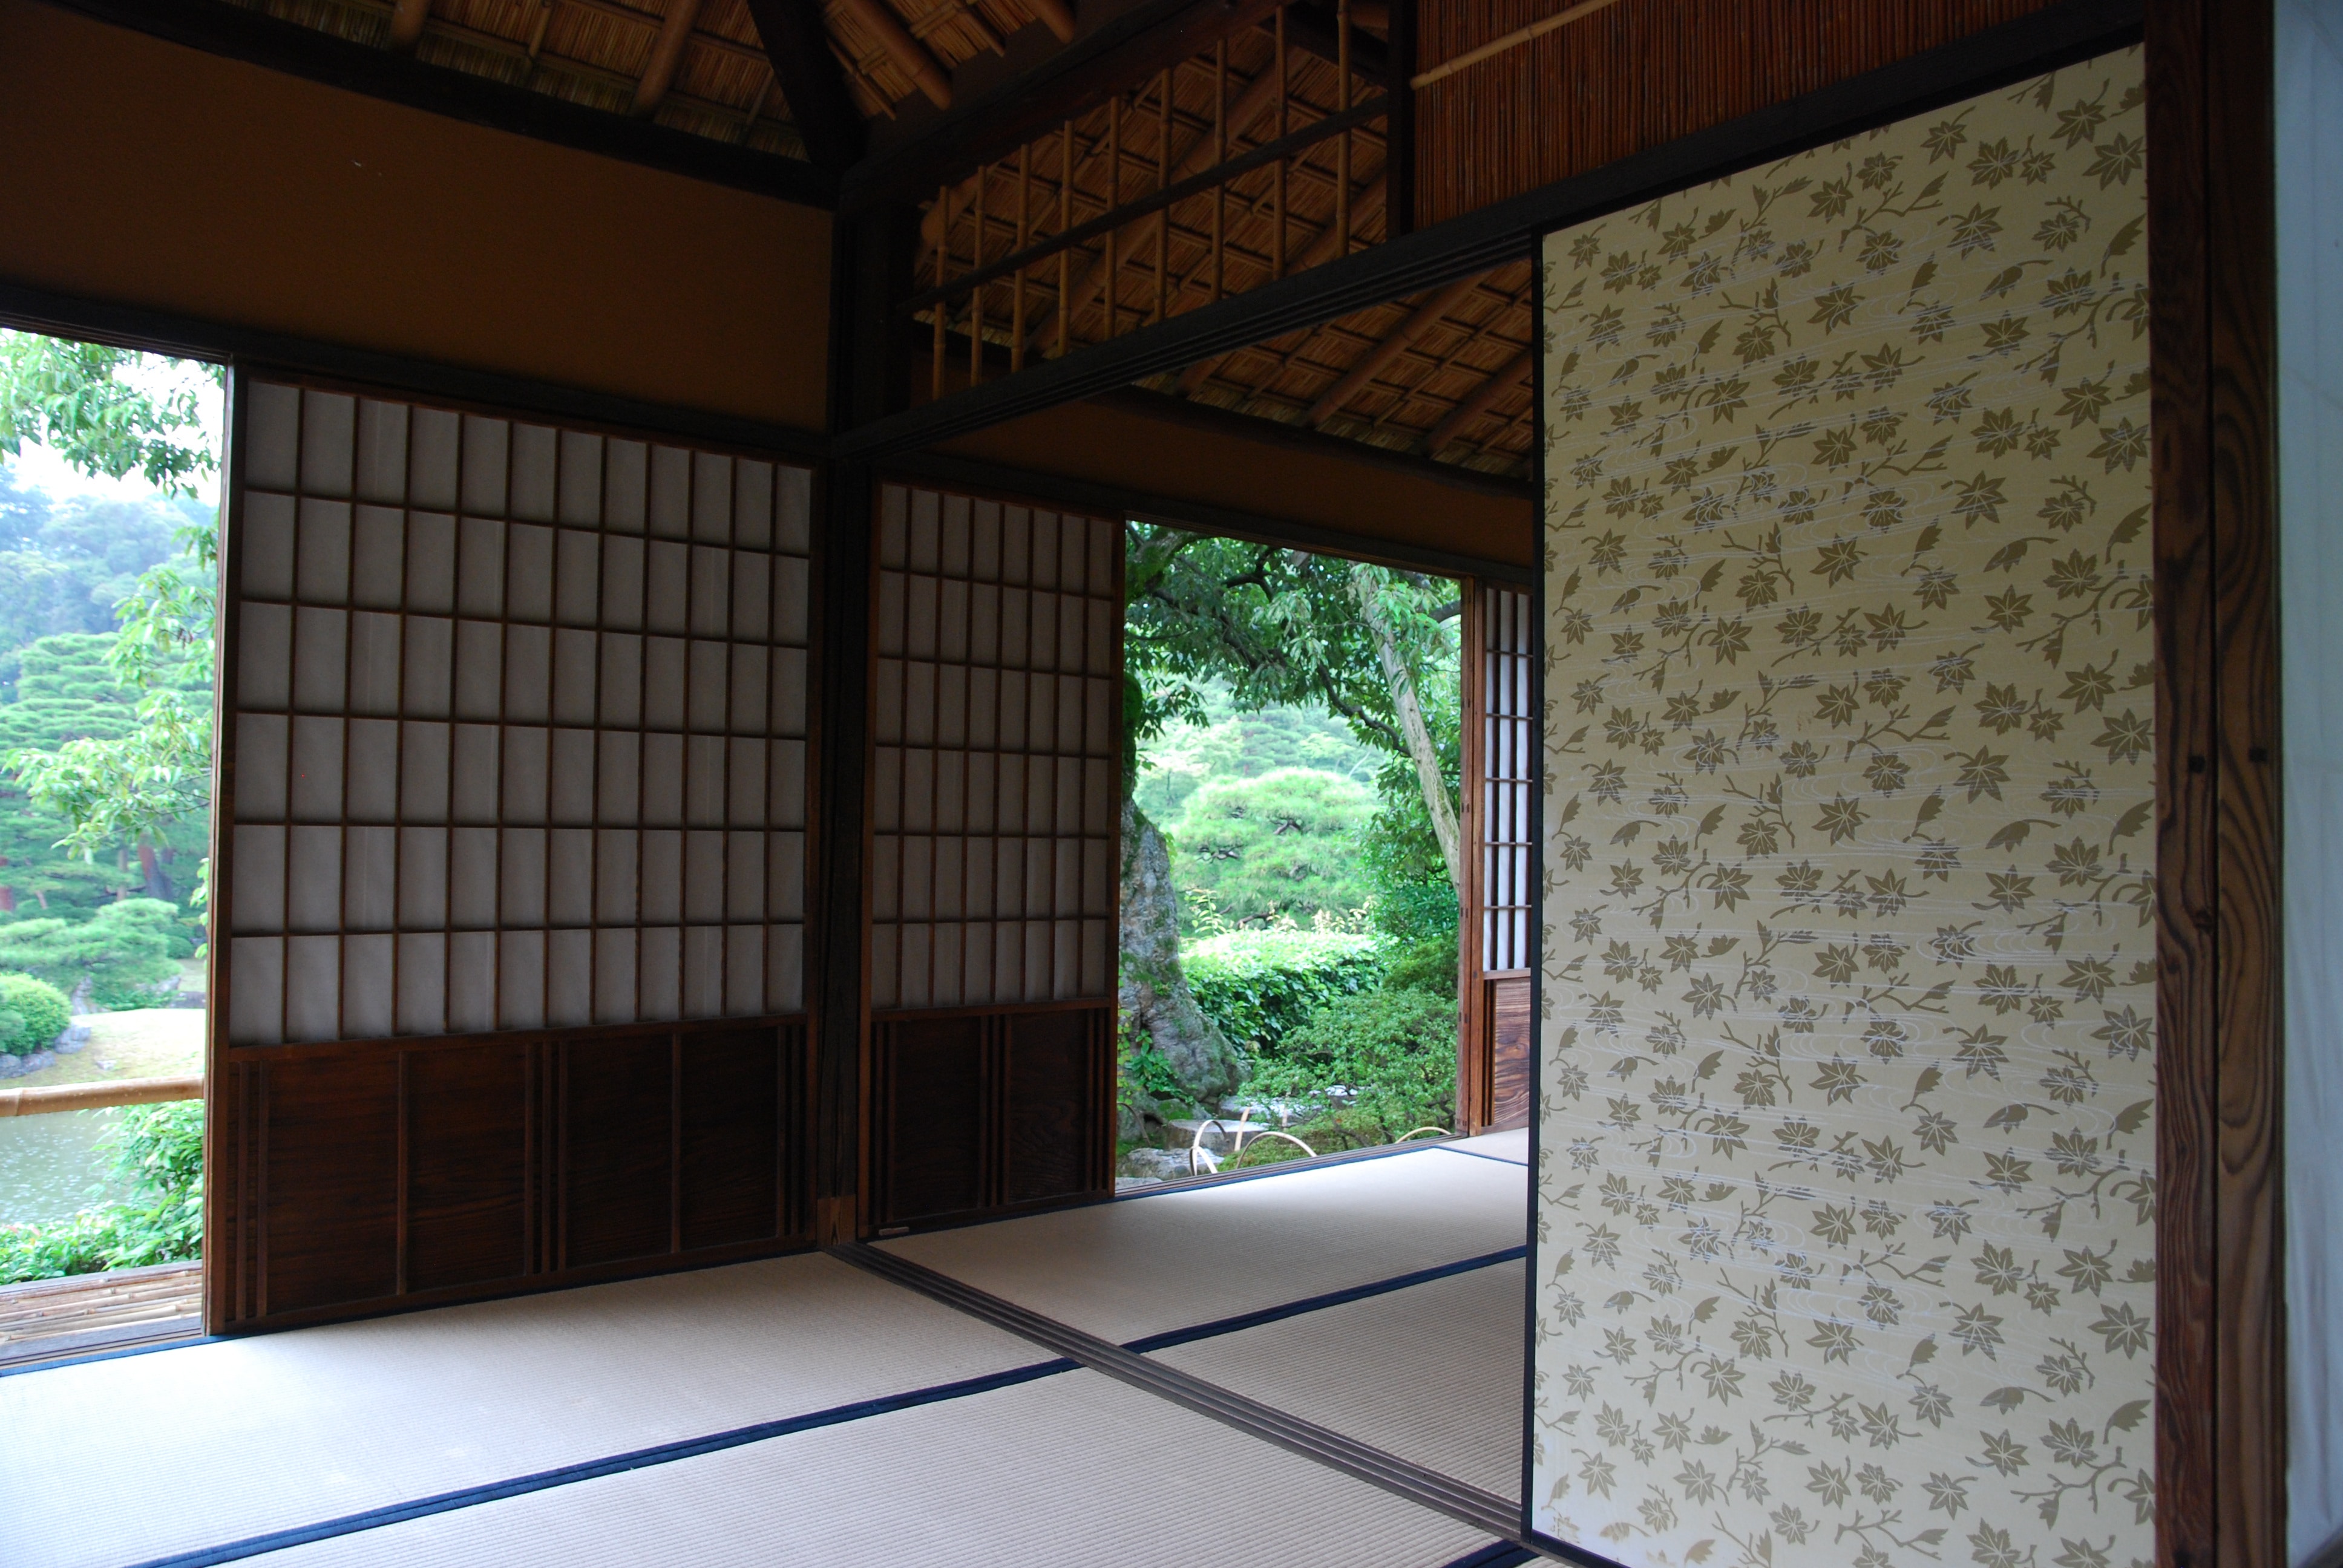 Pintu geser tradisional khas hunian Jepang, Fusuma.